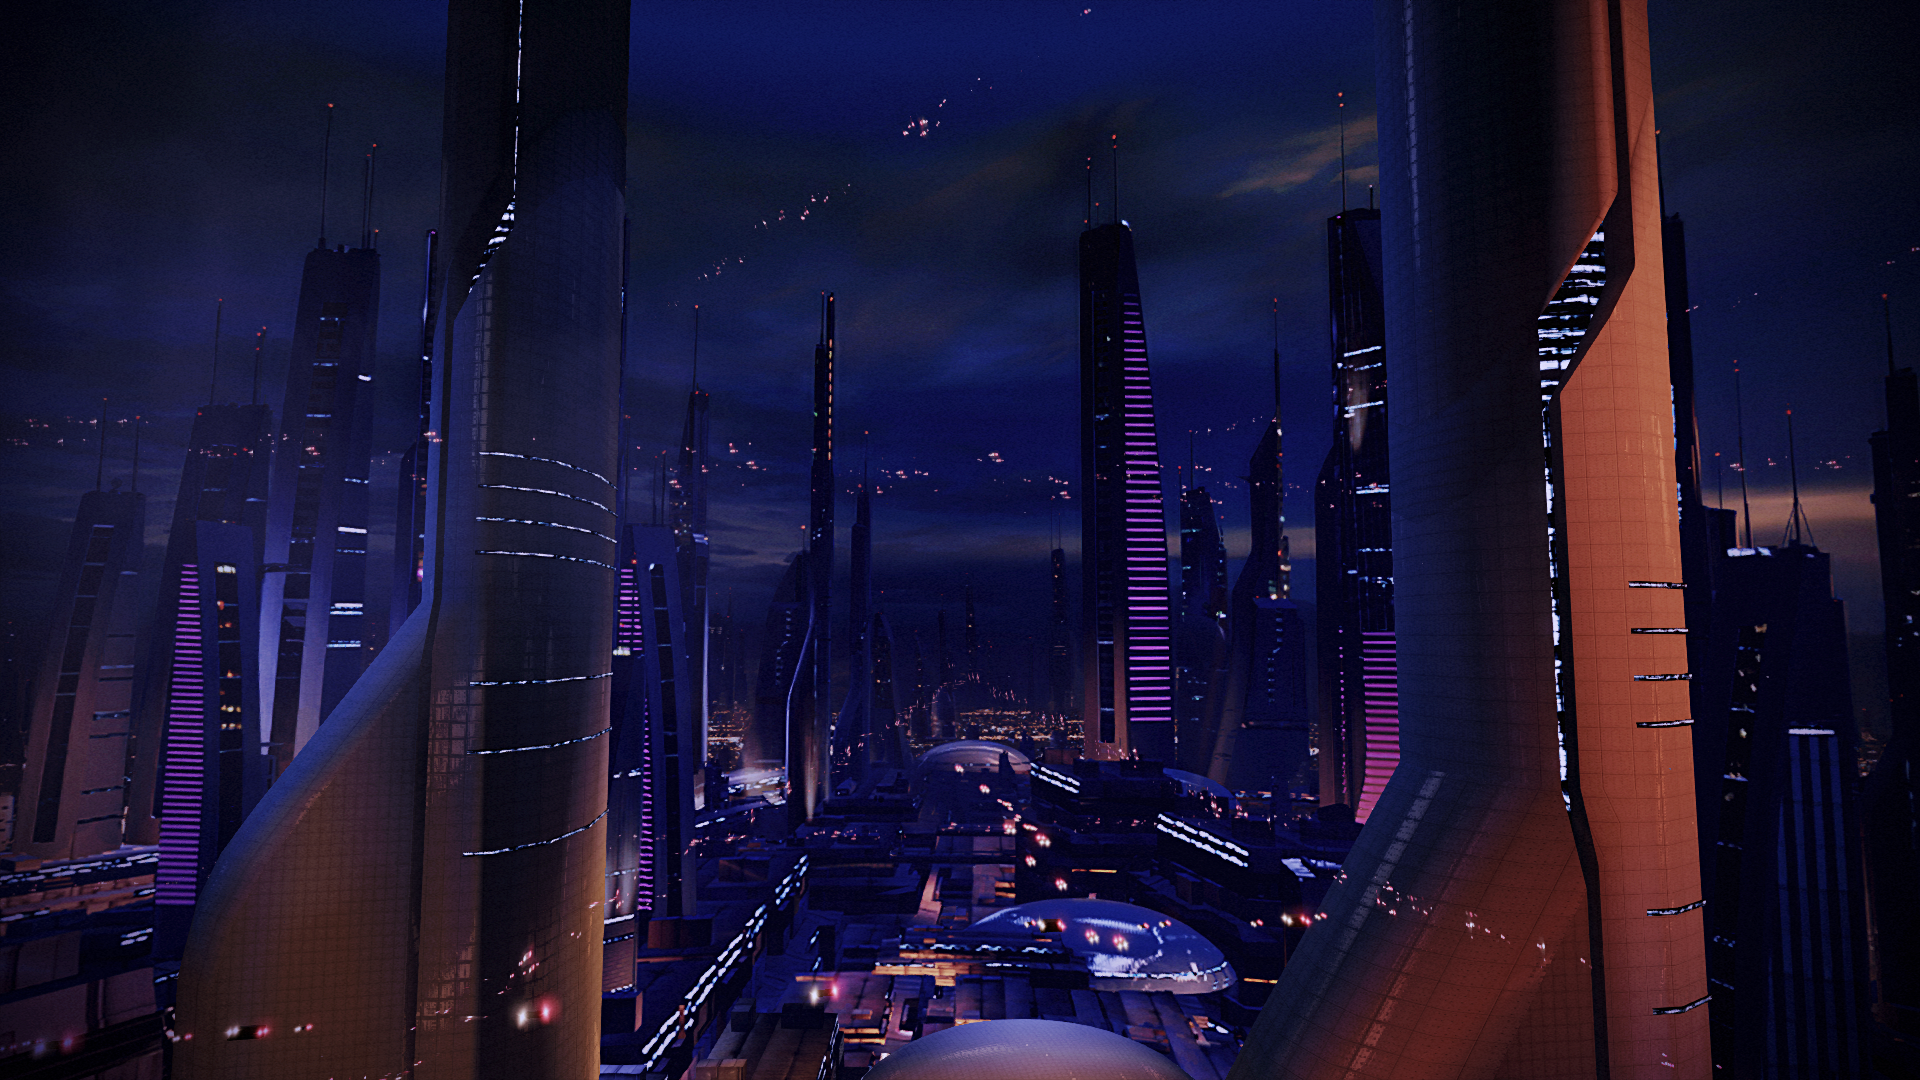 Video Games Mass Effect 2 Mass Effect Legendary Edition Futuristic City Building Lights Dark Blue 1920x1080